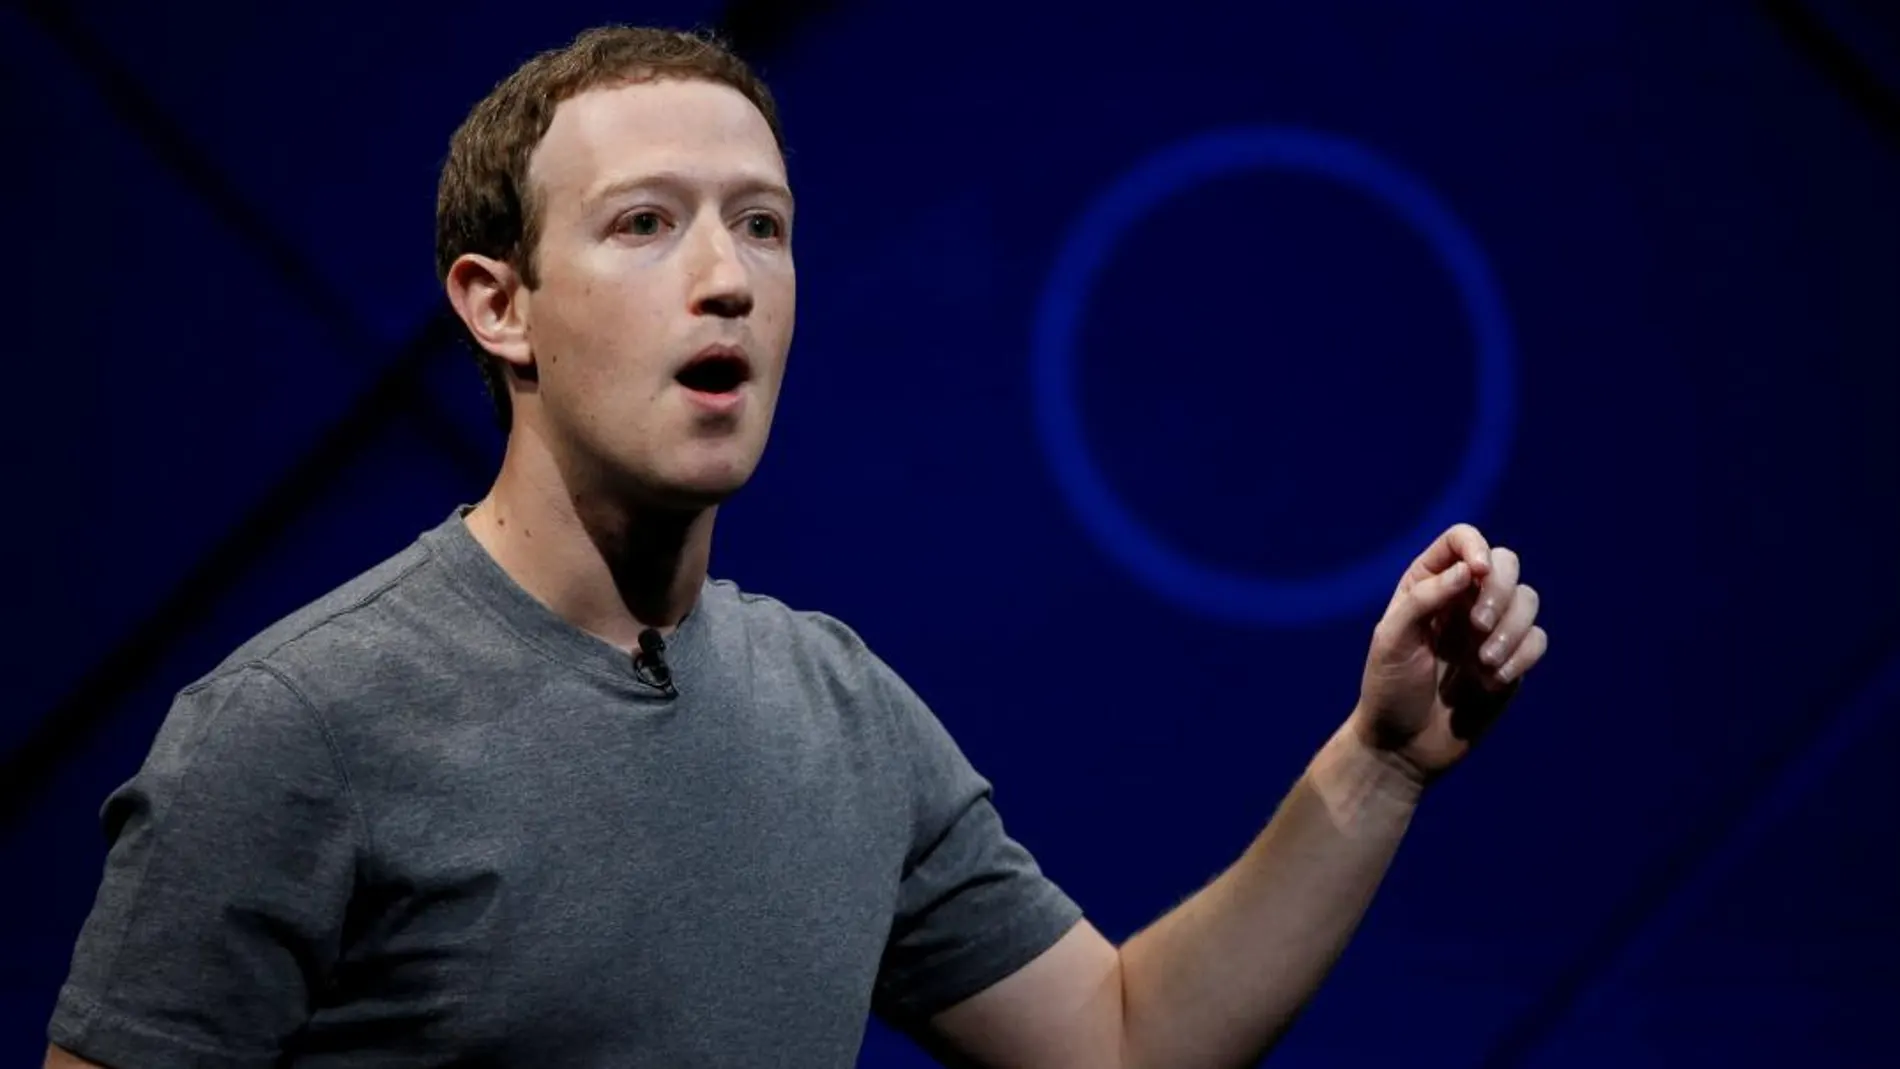 El fundador y CEO de Facebook, Mark Zuckerberg, en una imagen reciente